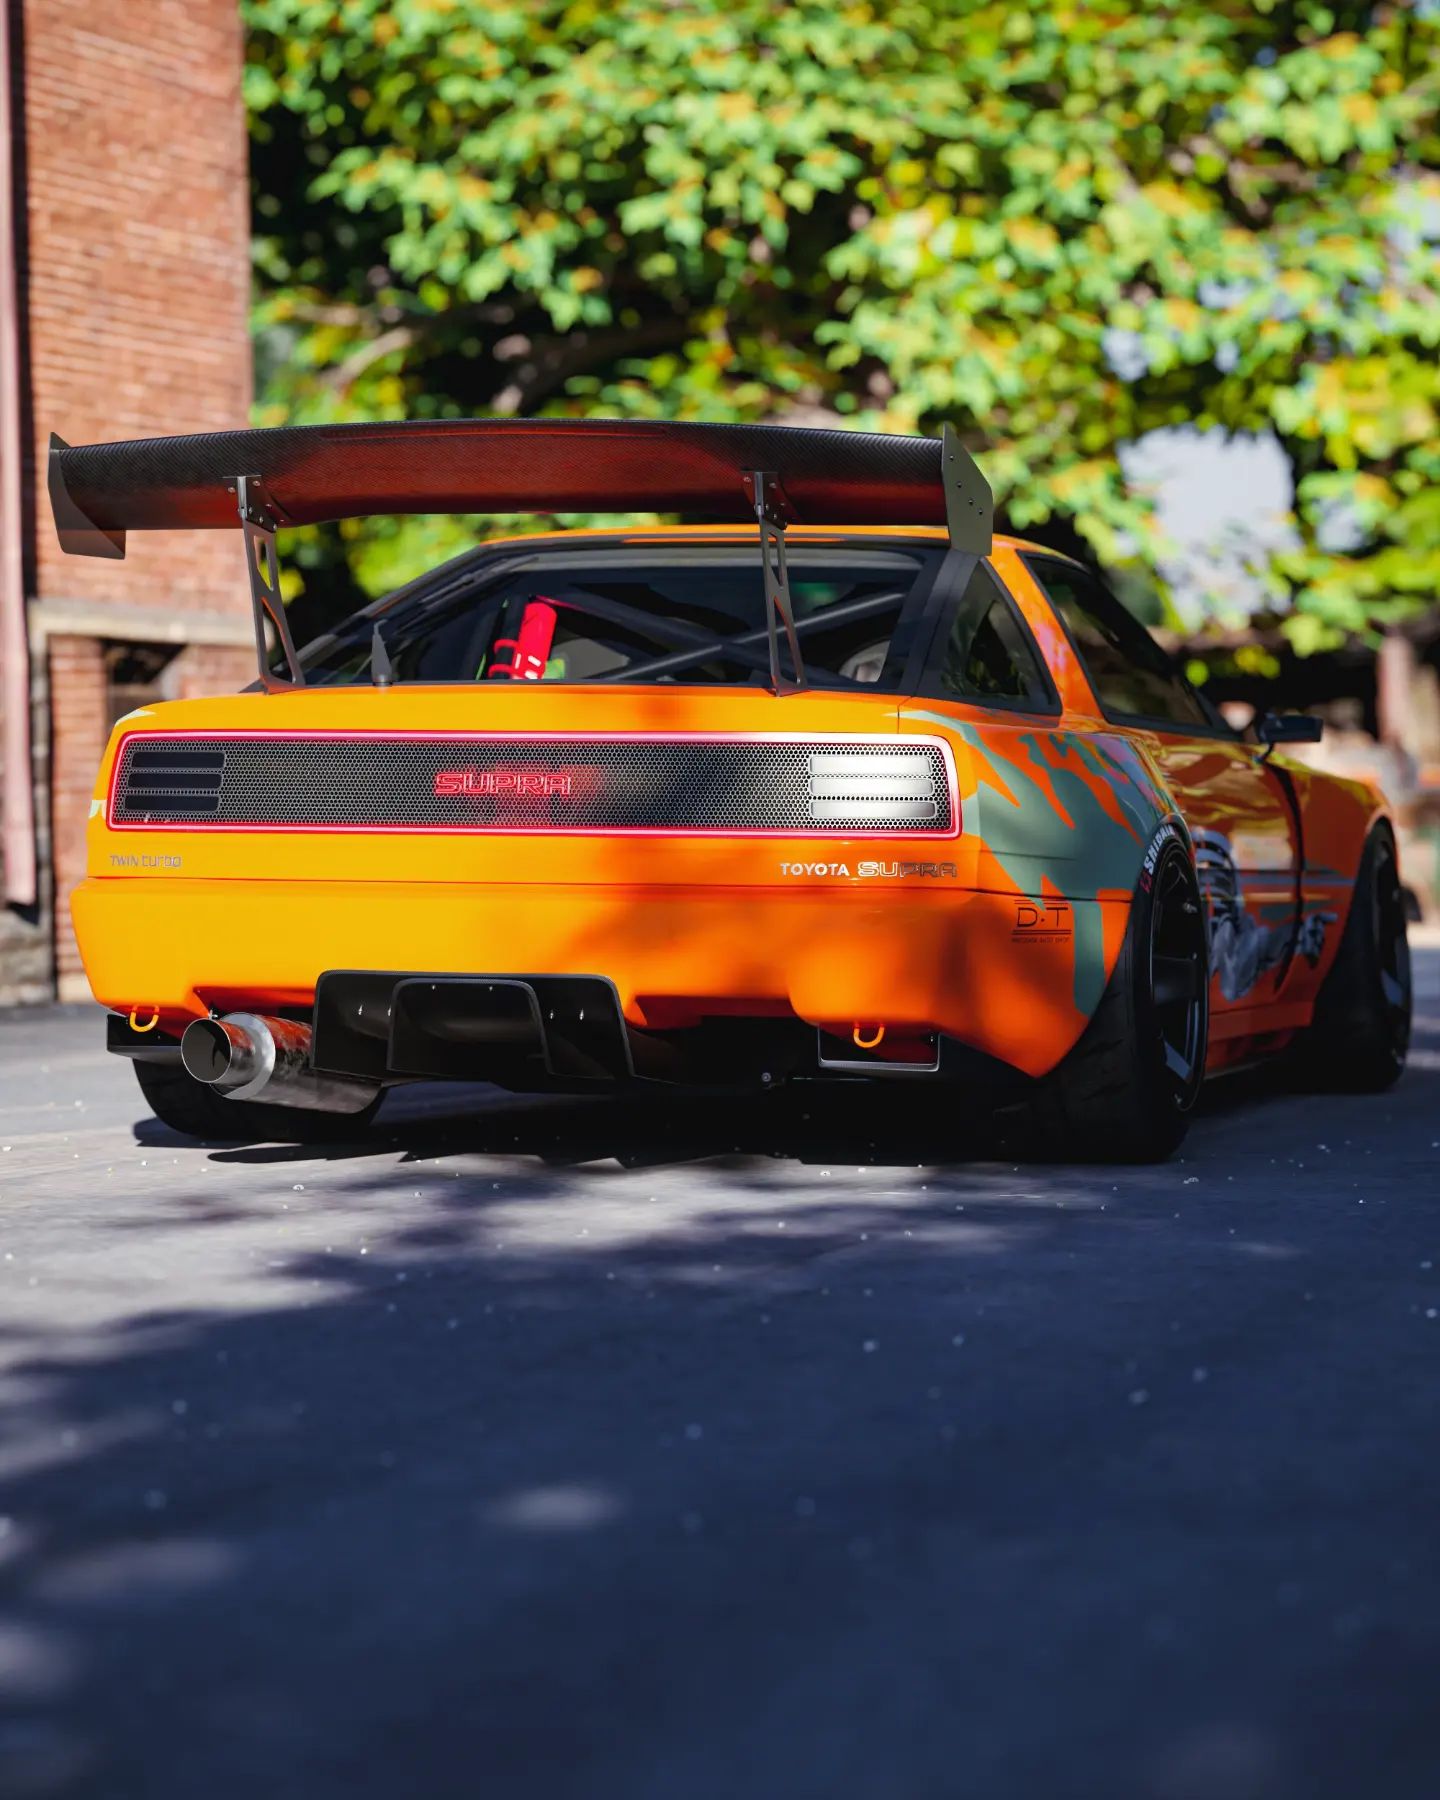 Brian's R34 Skyline GT-R Gets Supra Orange Widebody Look in Furious  Rendering - autoevolution